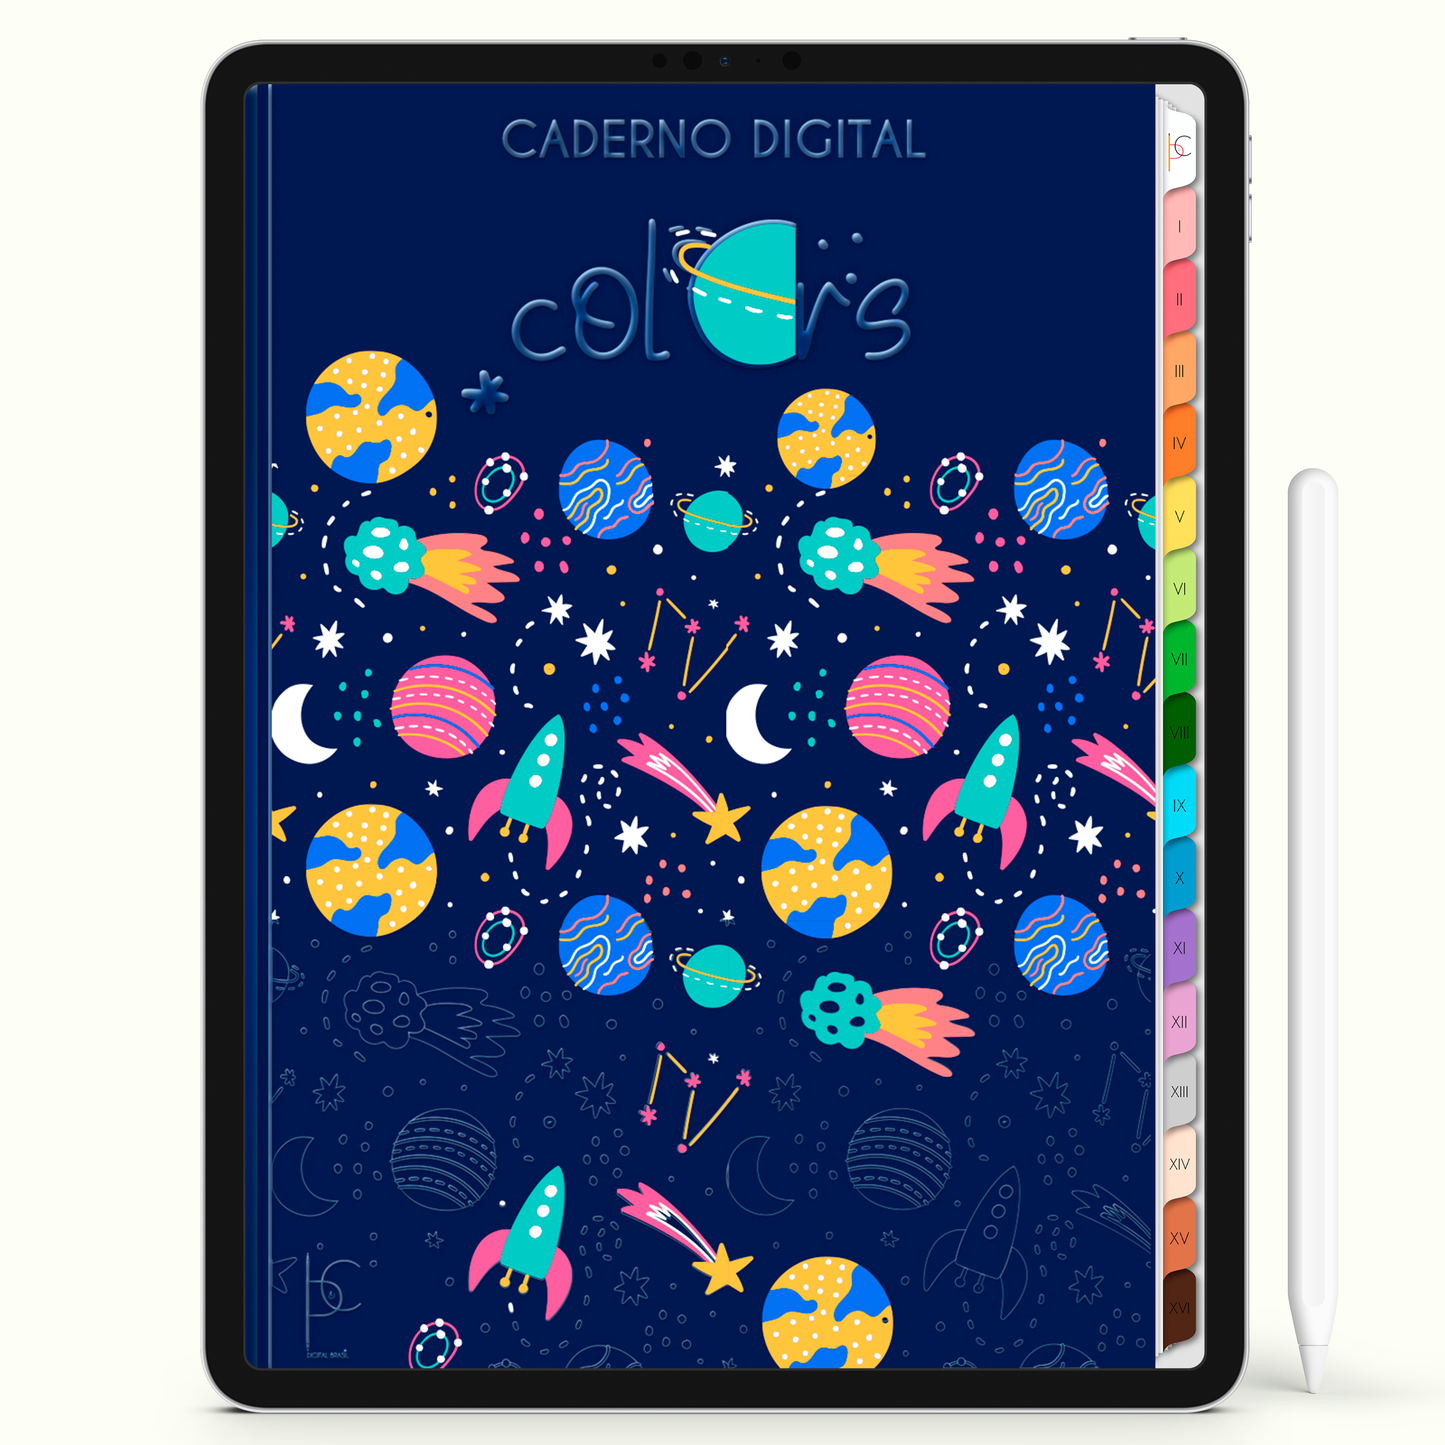 Caderno Digital Colors Espaço de Estudos e Notas 16 Matérias • Para iPad e Tablet Android • Download instantâneo • Sustentável